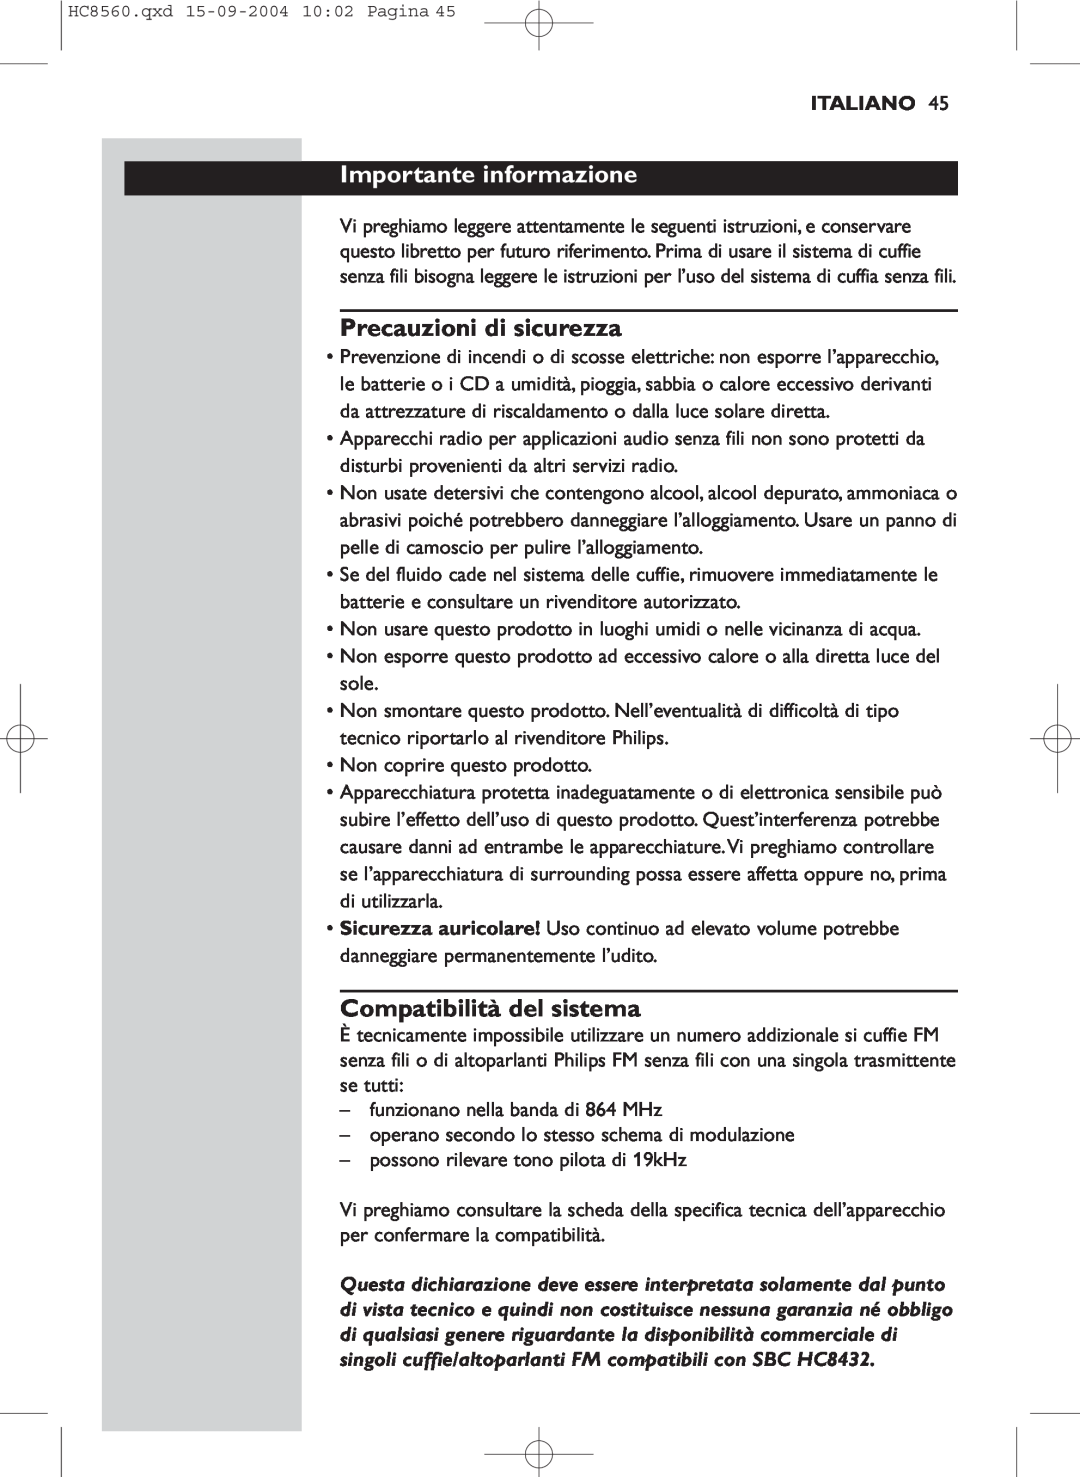 Philips HC 8560 manual Importante informazione, Precauzioni di sicurezza, Compatibilità del sistema, Italiano 